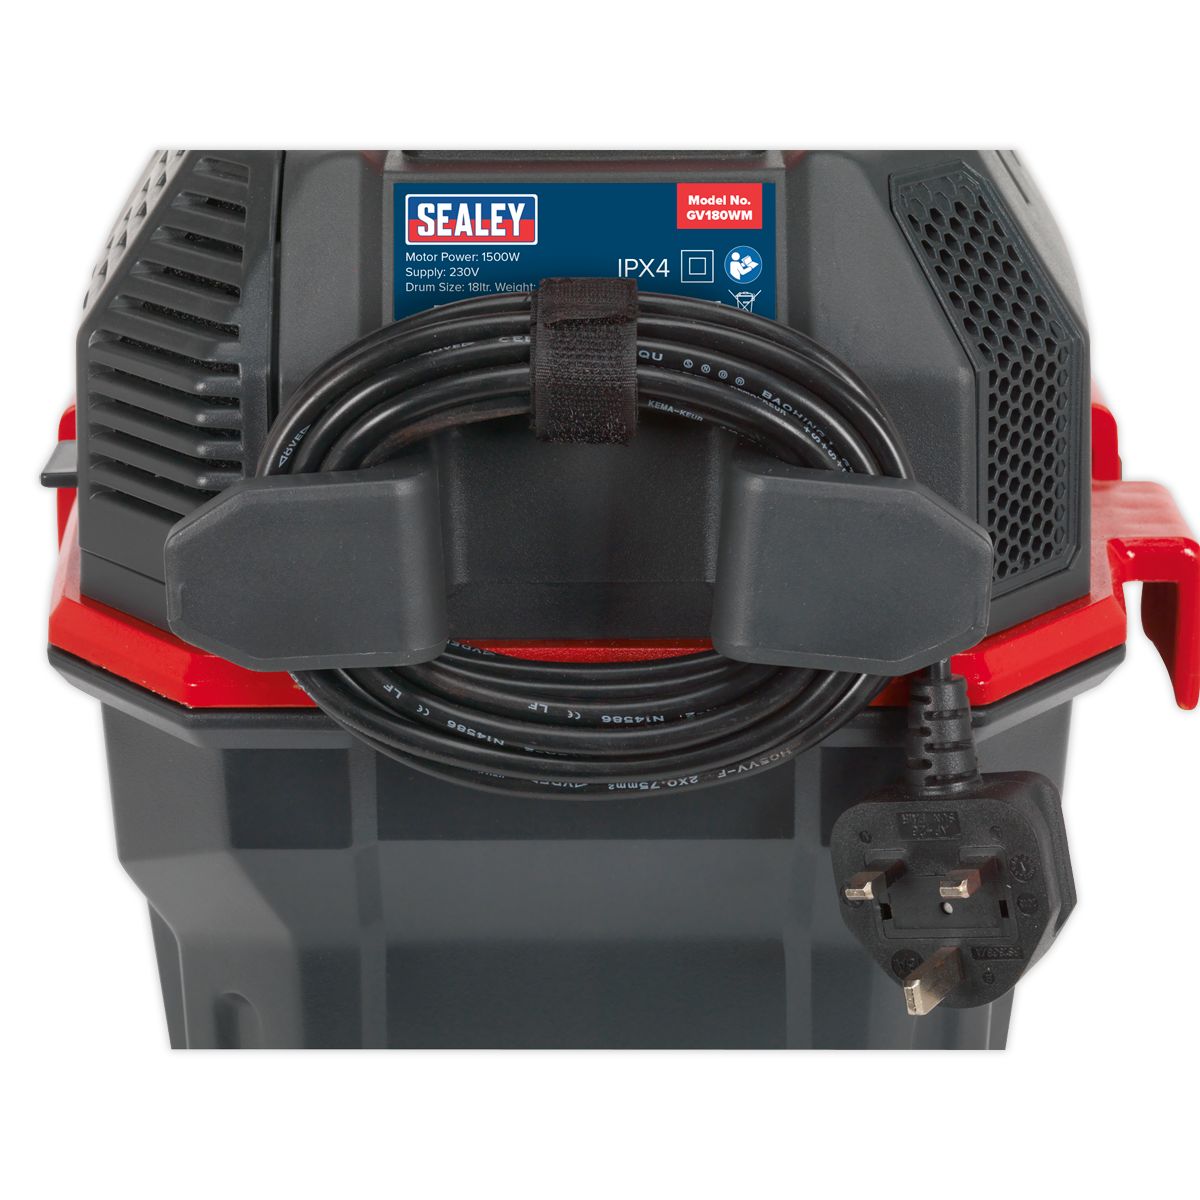 Sealey GV180WM Garage Vacuum 1500W with Remote Control